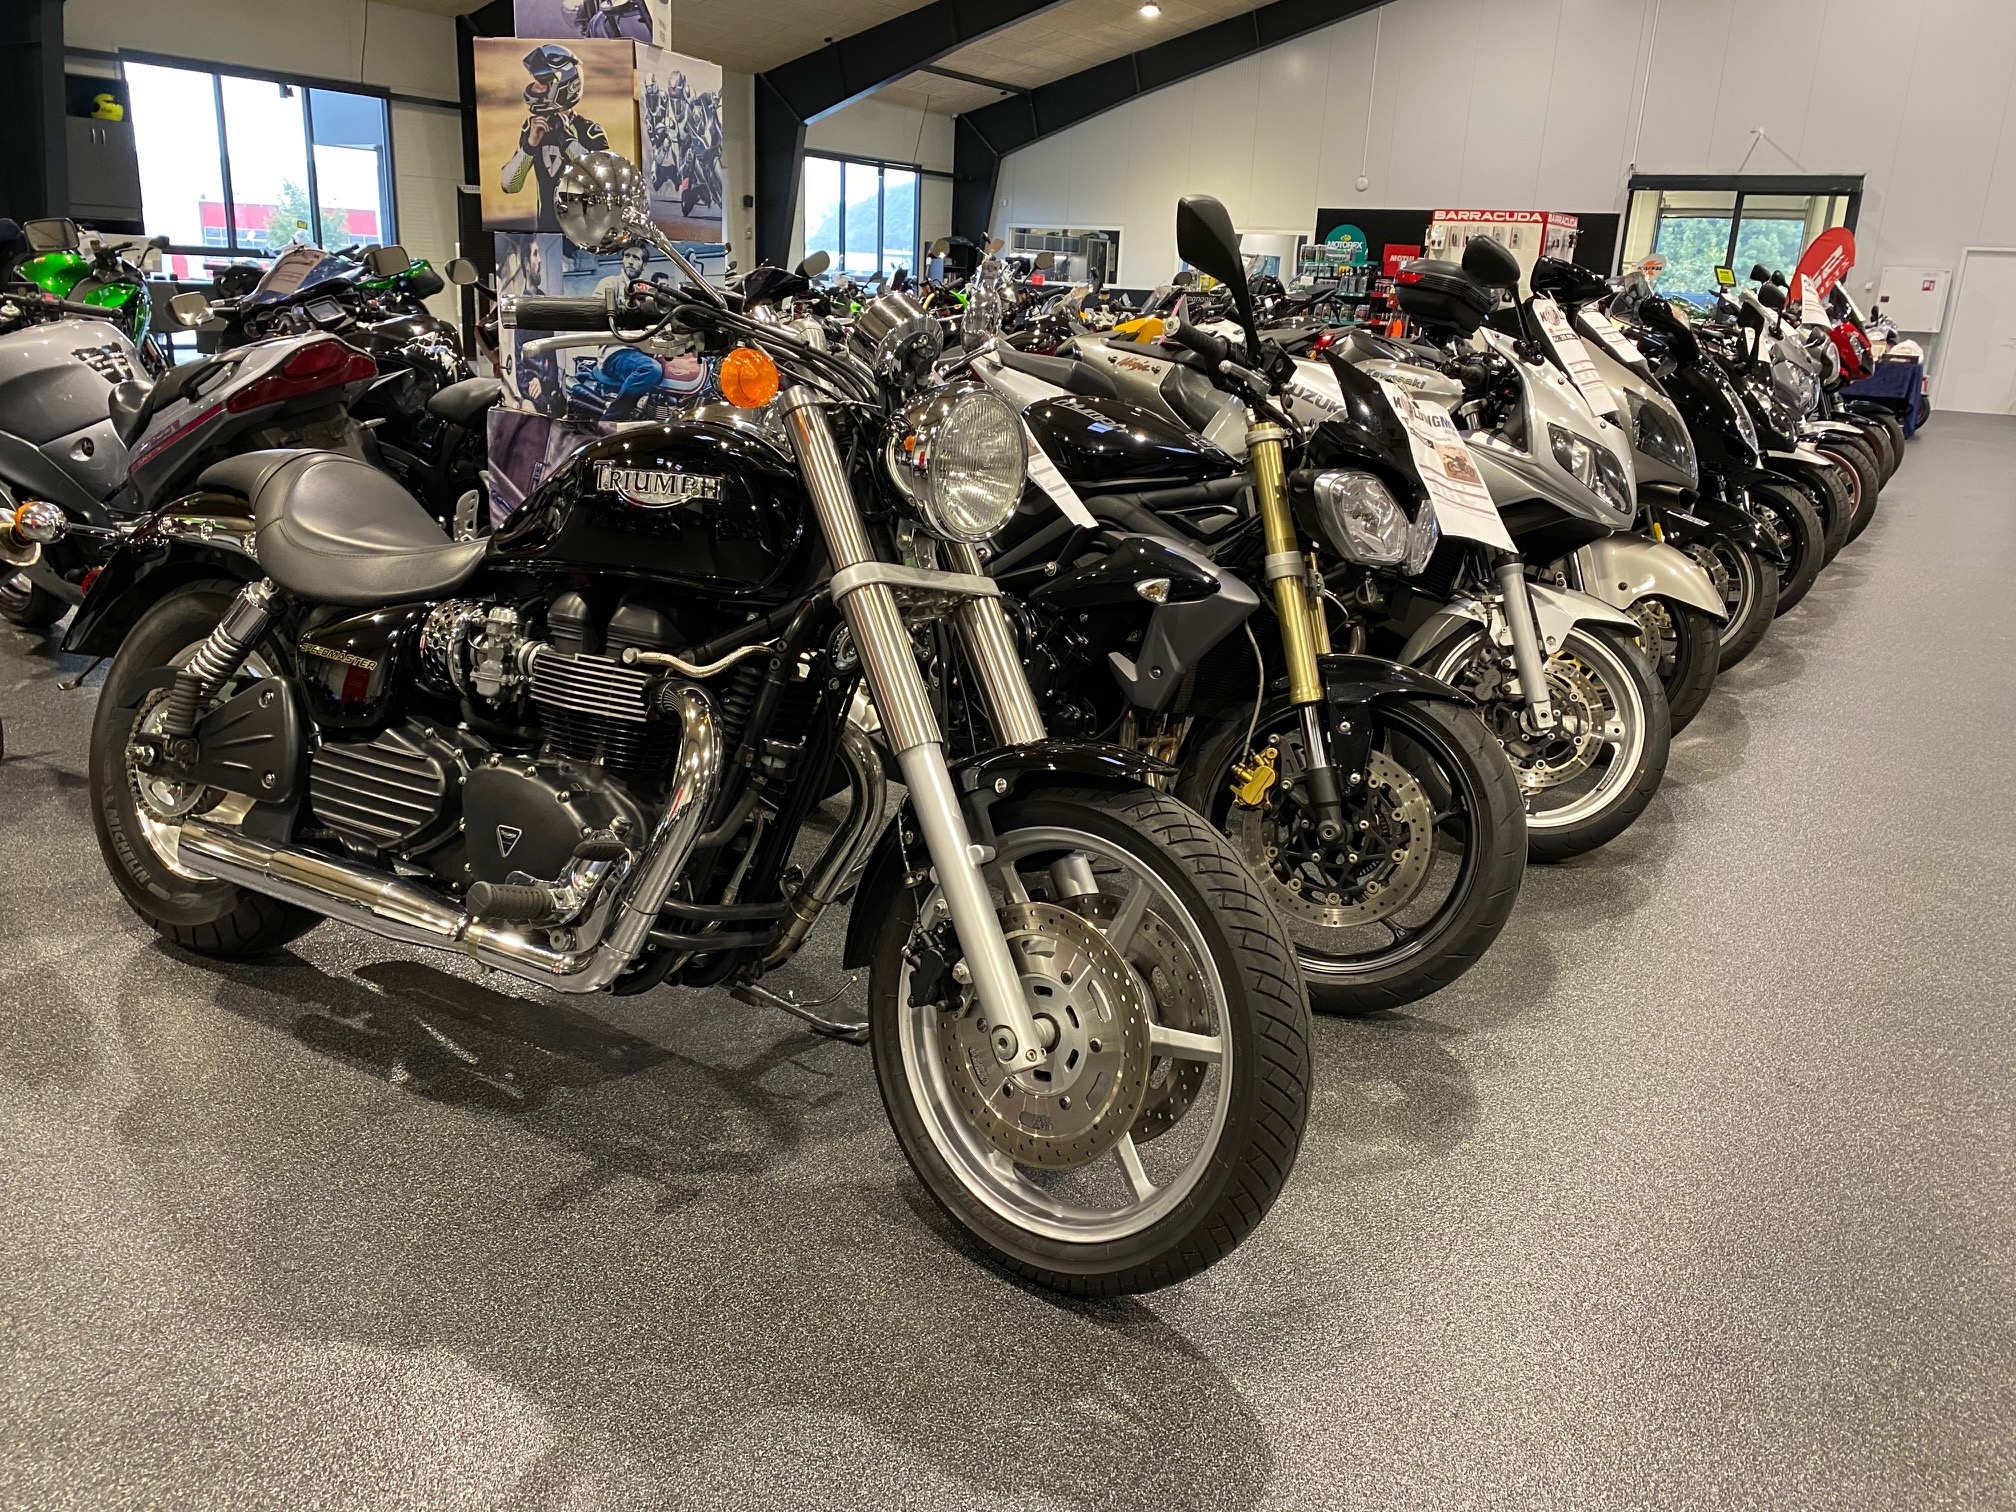 Brugte motorcykler: vores MC til salg i Kolding/Jylland